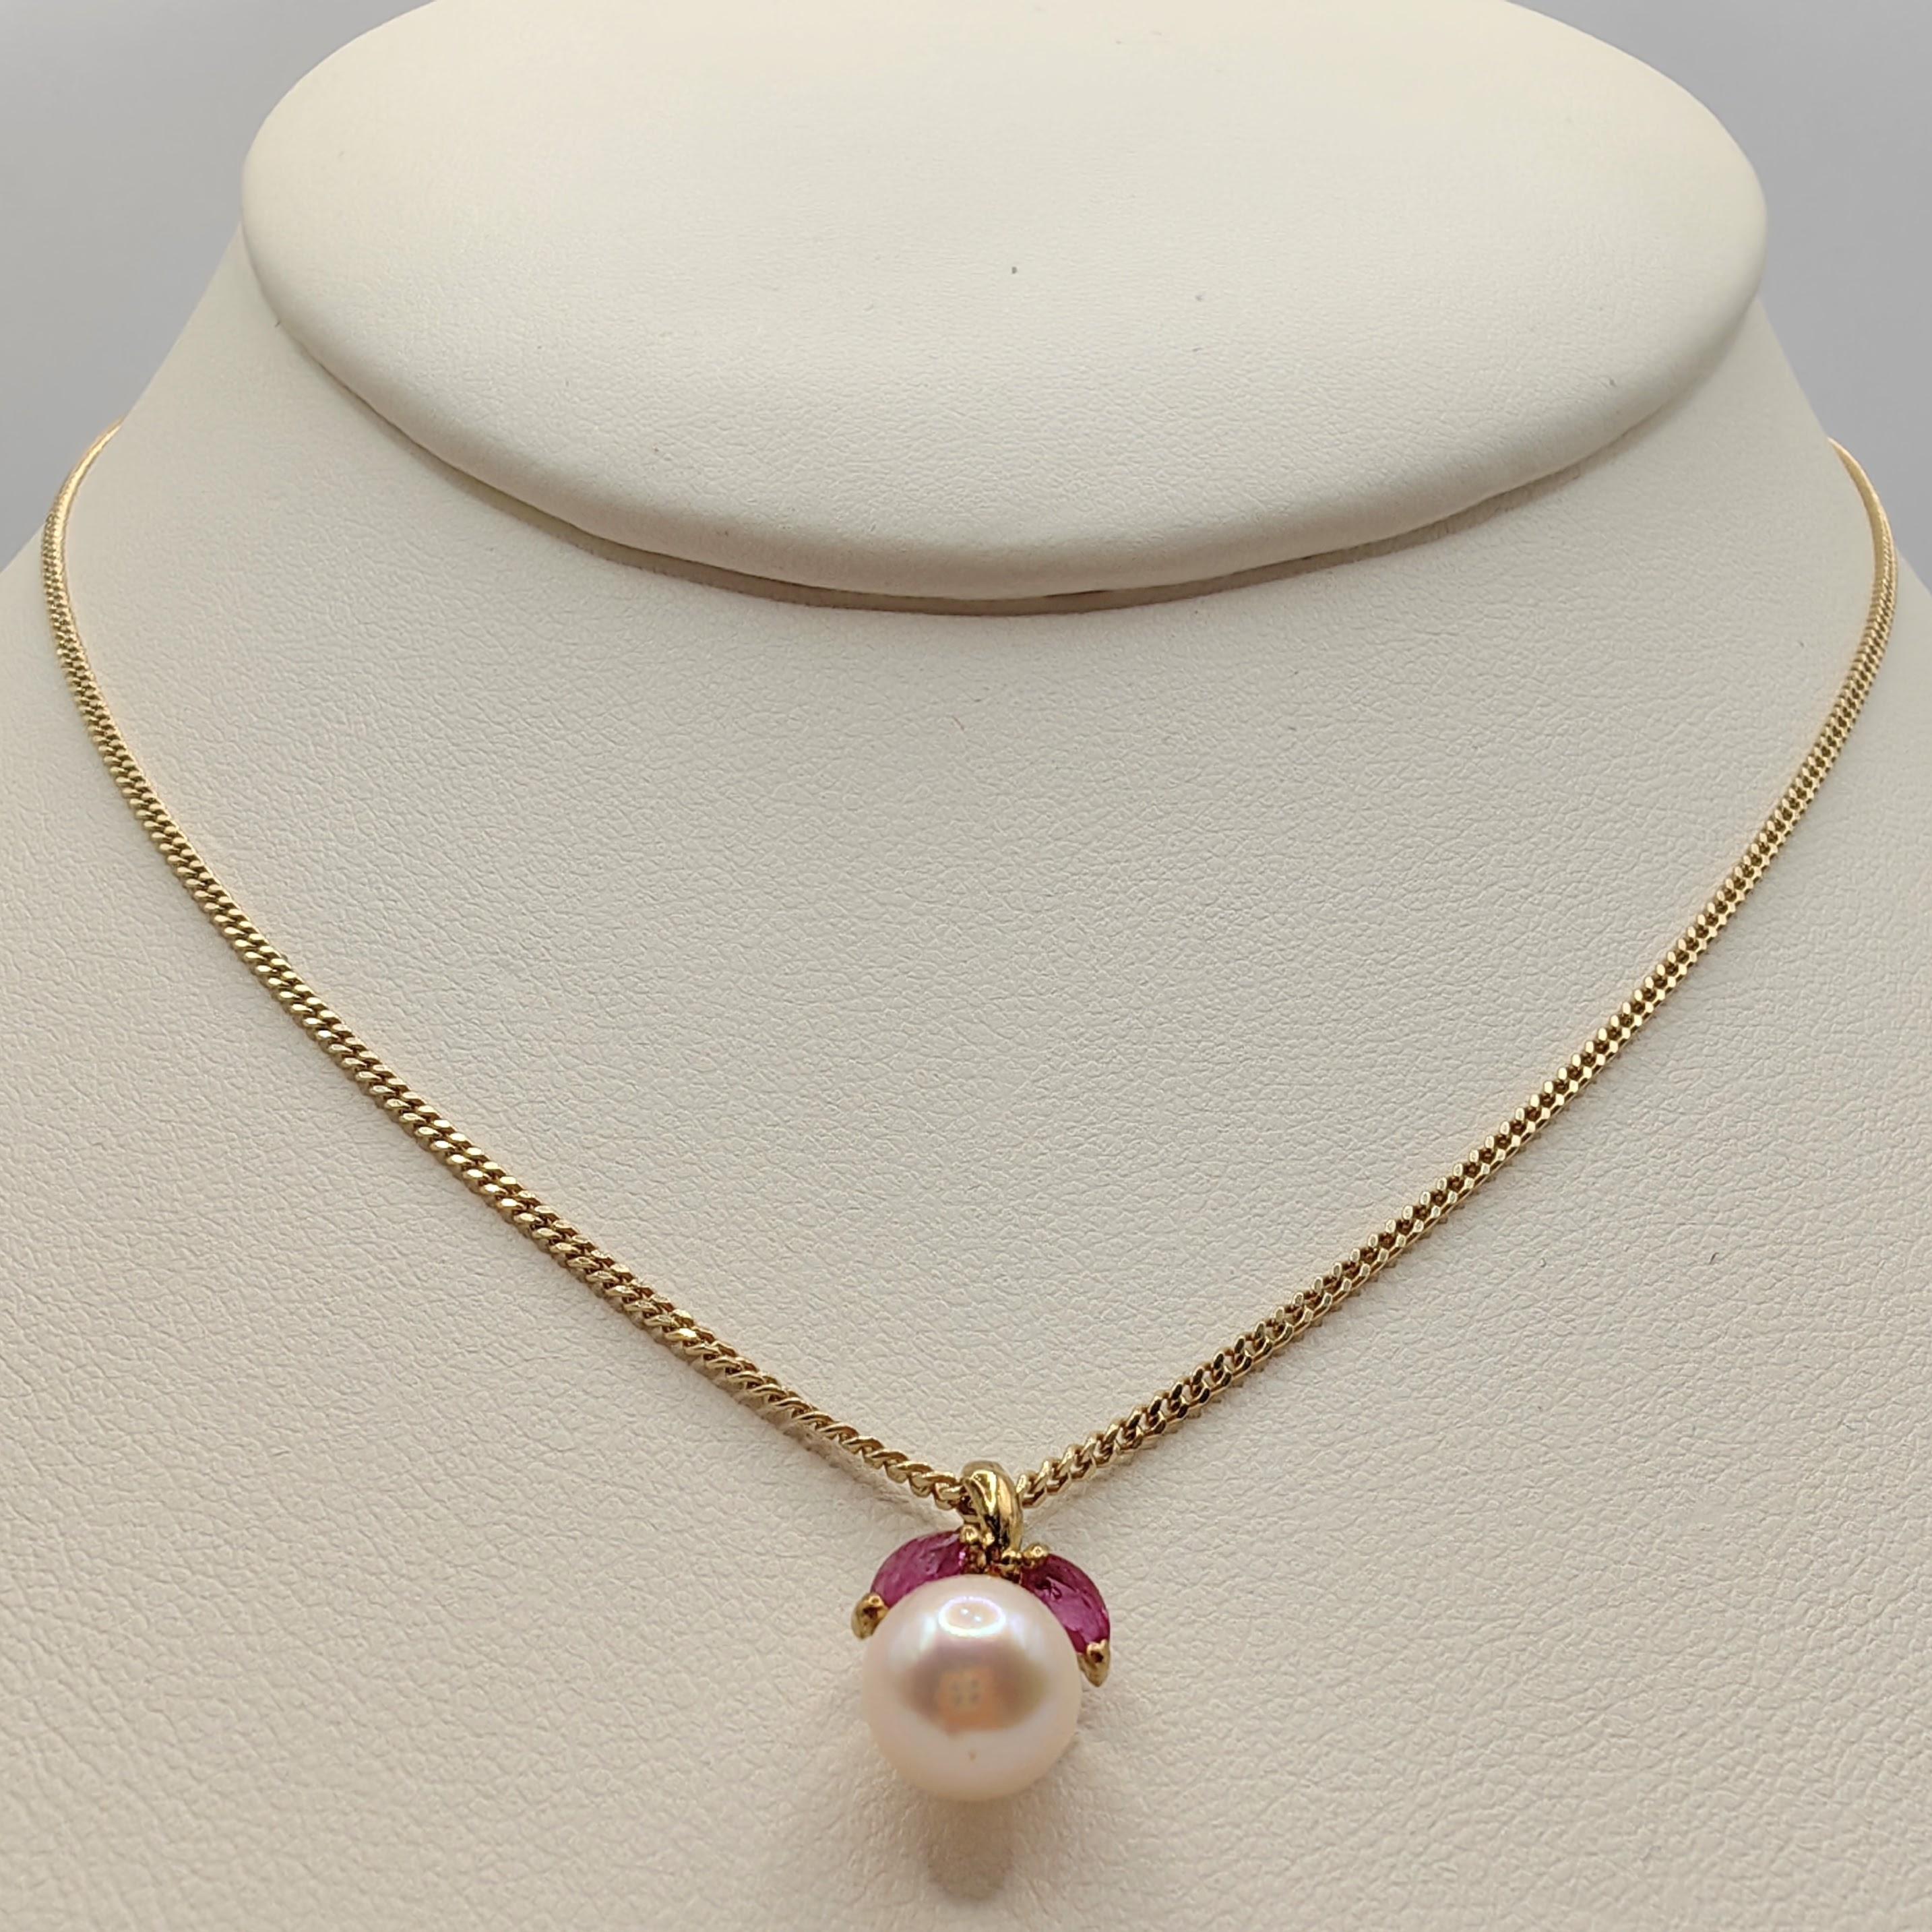 Nous vous présentons notre pendentif Vintage Marquise Cut Rubies & Pearl Necklace en or jaune 14K, un bijou intemporel qui allie le charme vintage à l'élégance contemporaine.

Au cœur de ce pendentif se trouve une perle ronde de culture d'eau douce,